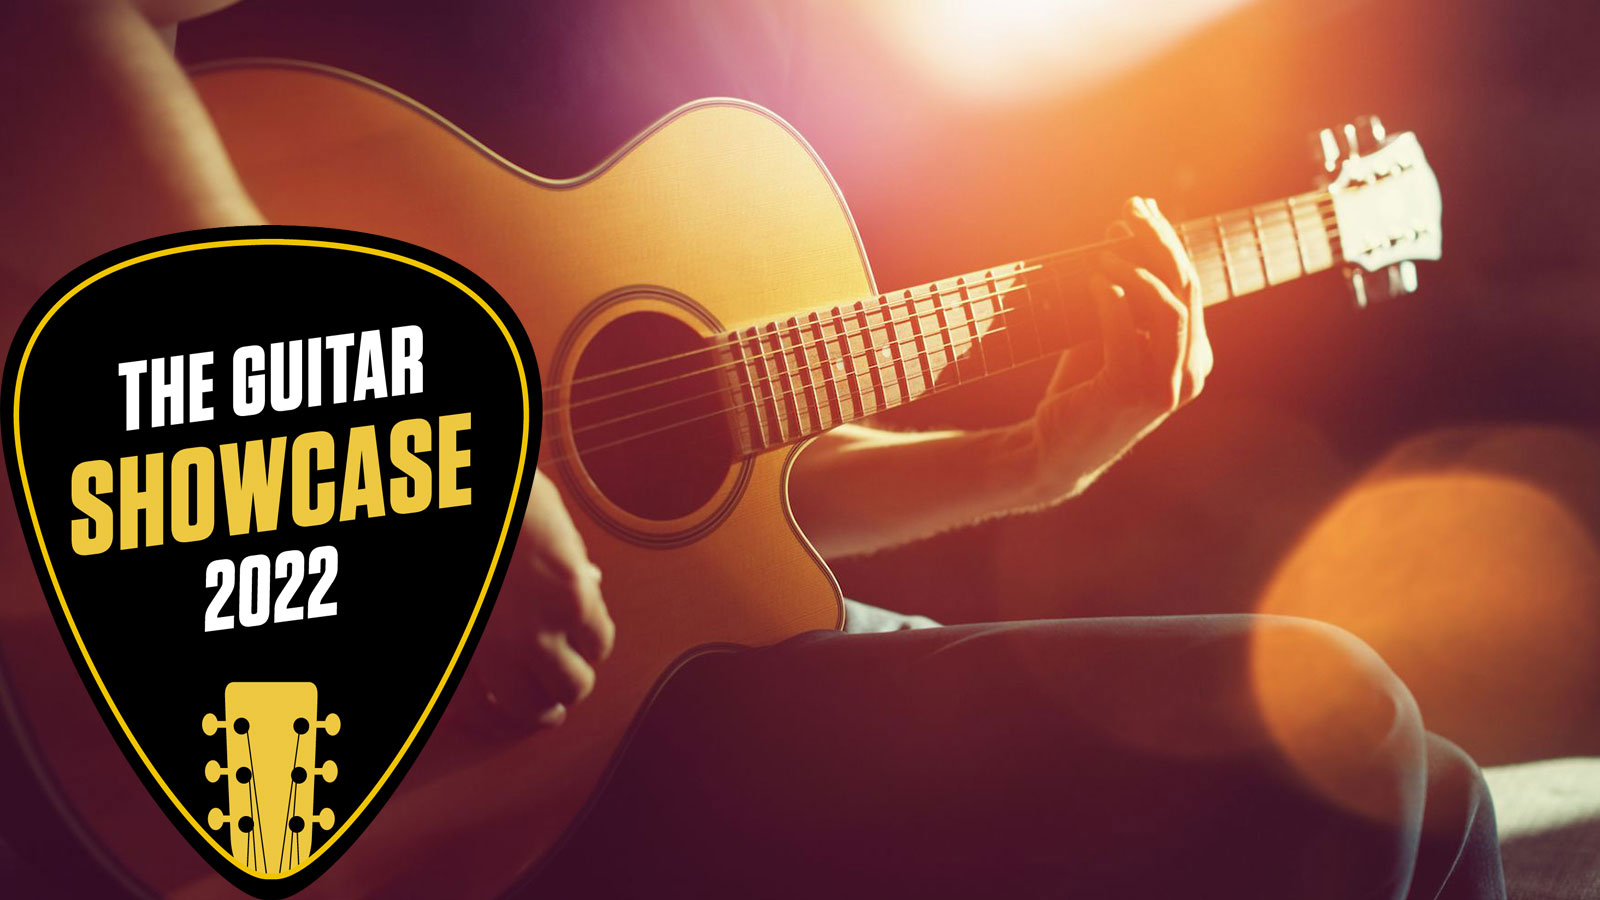 Hoe met de klok mee Shipley The 30 best acoustic guitar songs of all time | MusicRadar